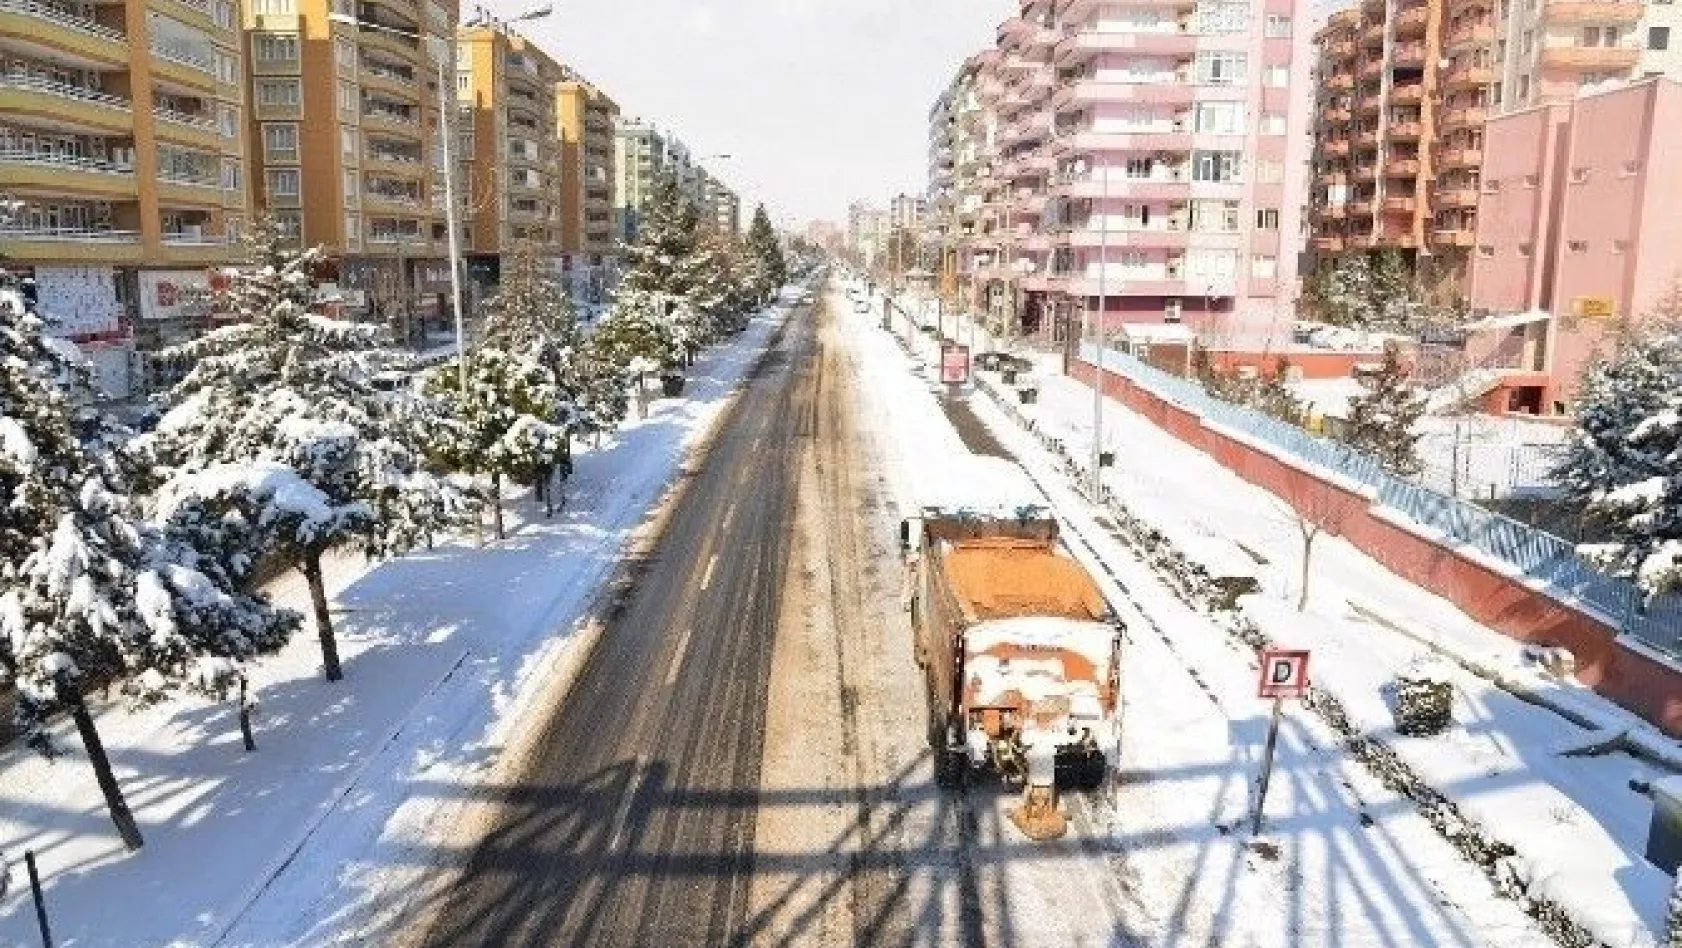 5 bin 912 kilometre yolda karla mücadele çalışmaları sürüyor
